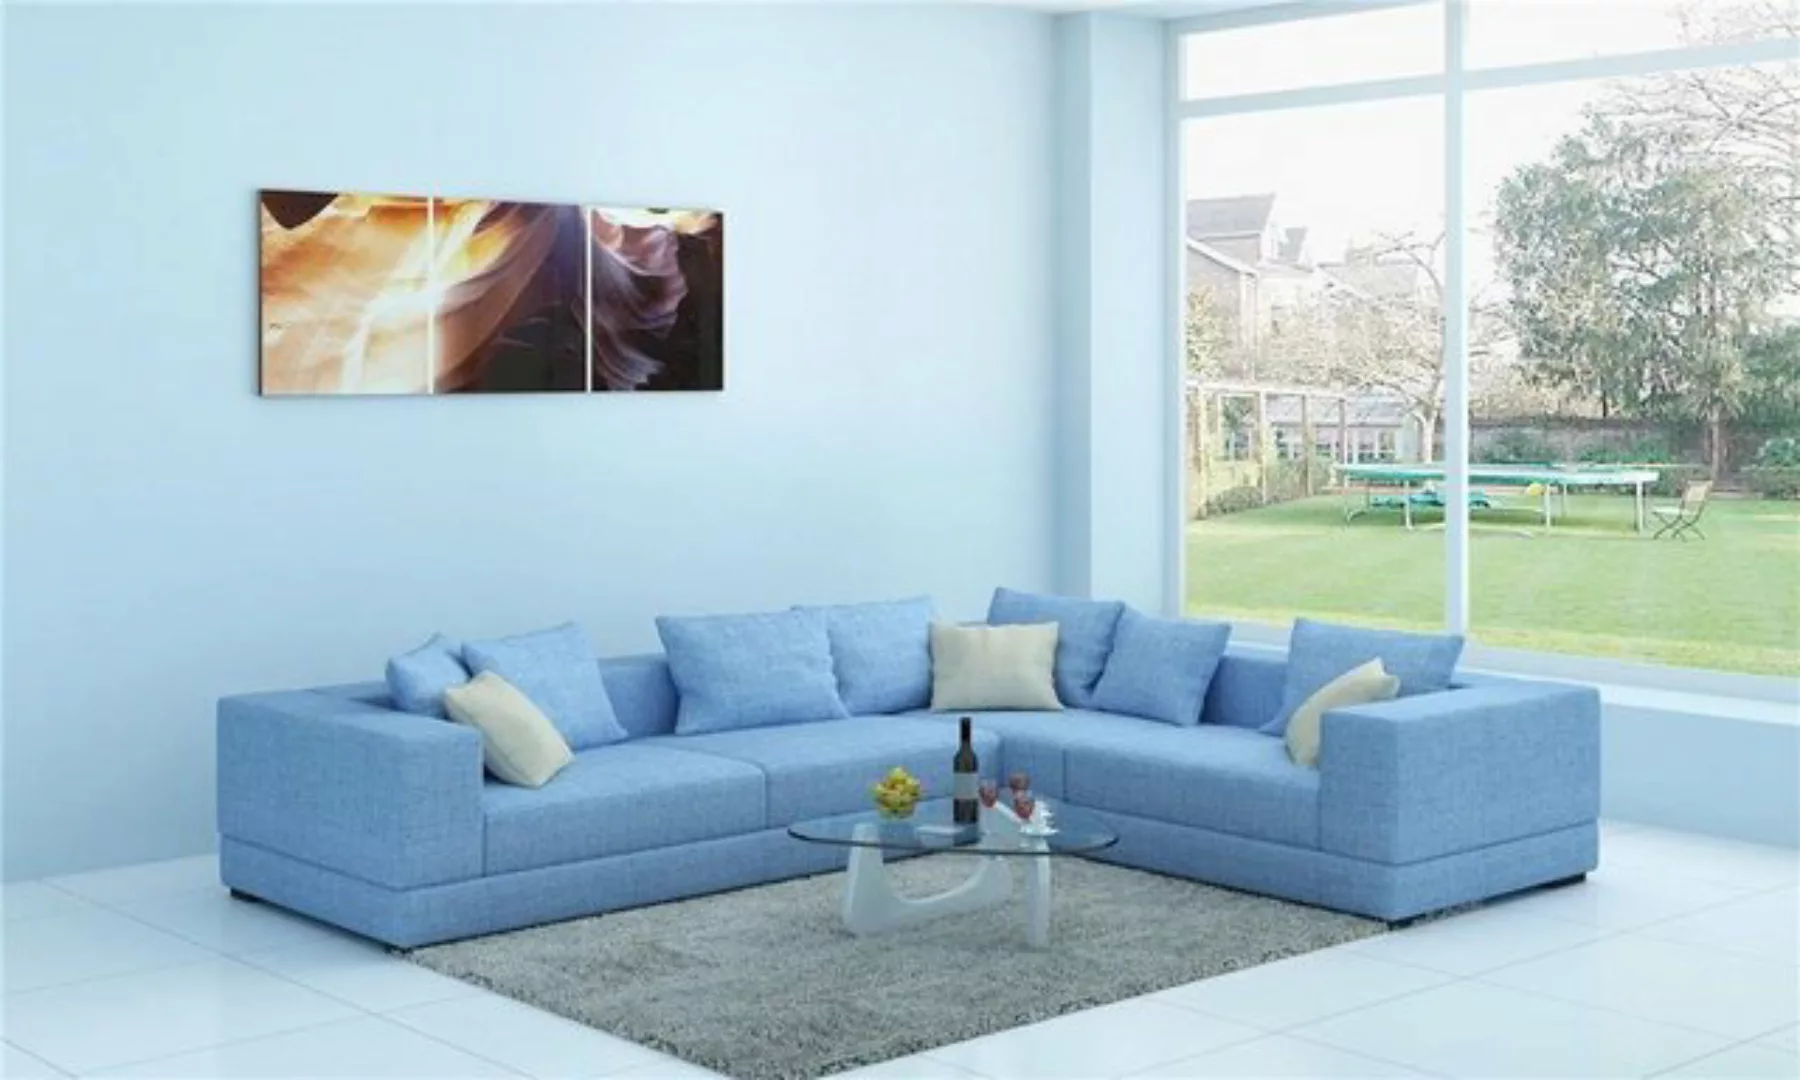 JVmoebel Ecksofa, Sofa Polster Textil Couch Design Ecksofa Couchen Stoff Wo günstig online kaufen